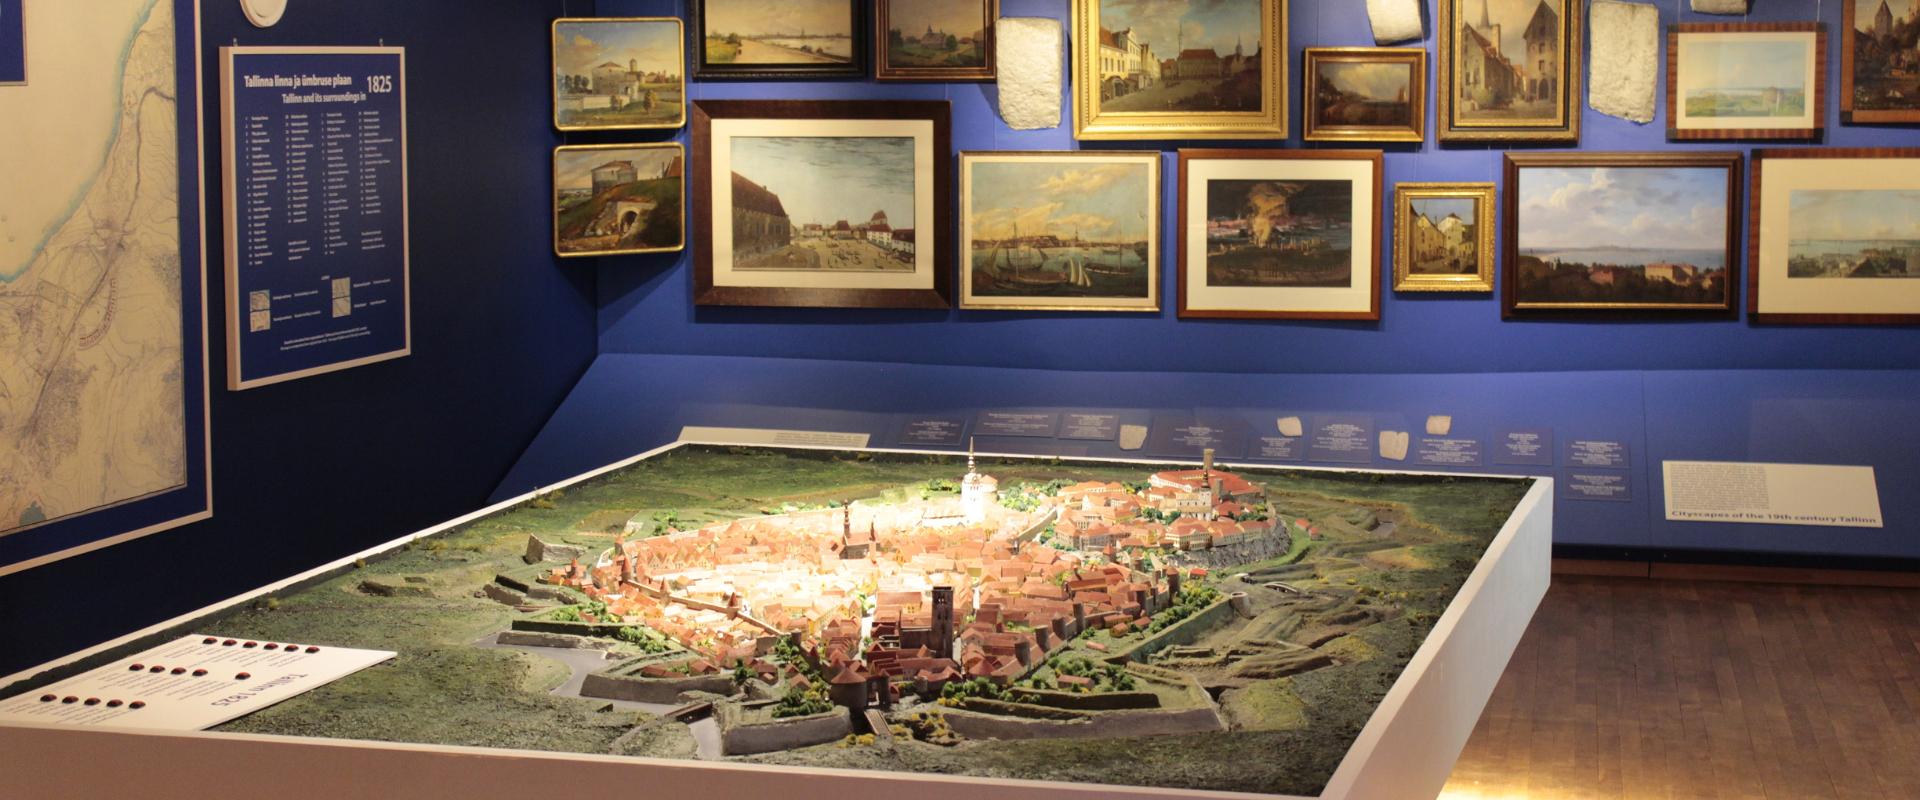 Tallinner Museum für Stadtleben